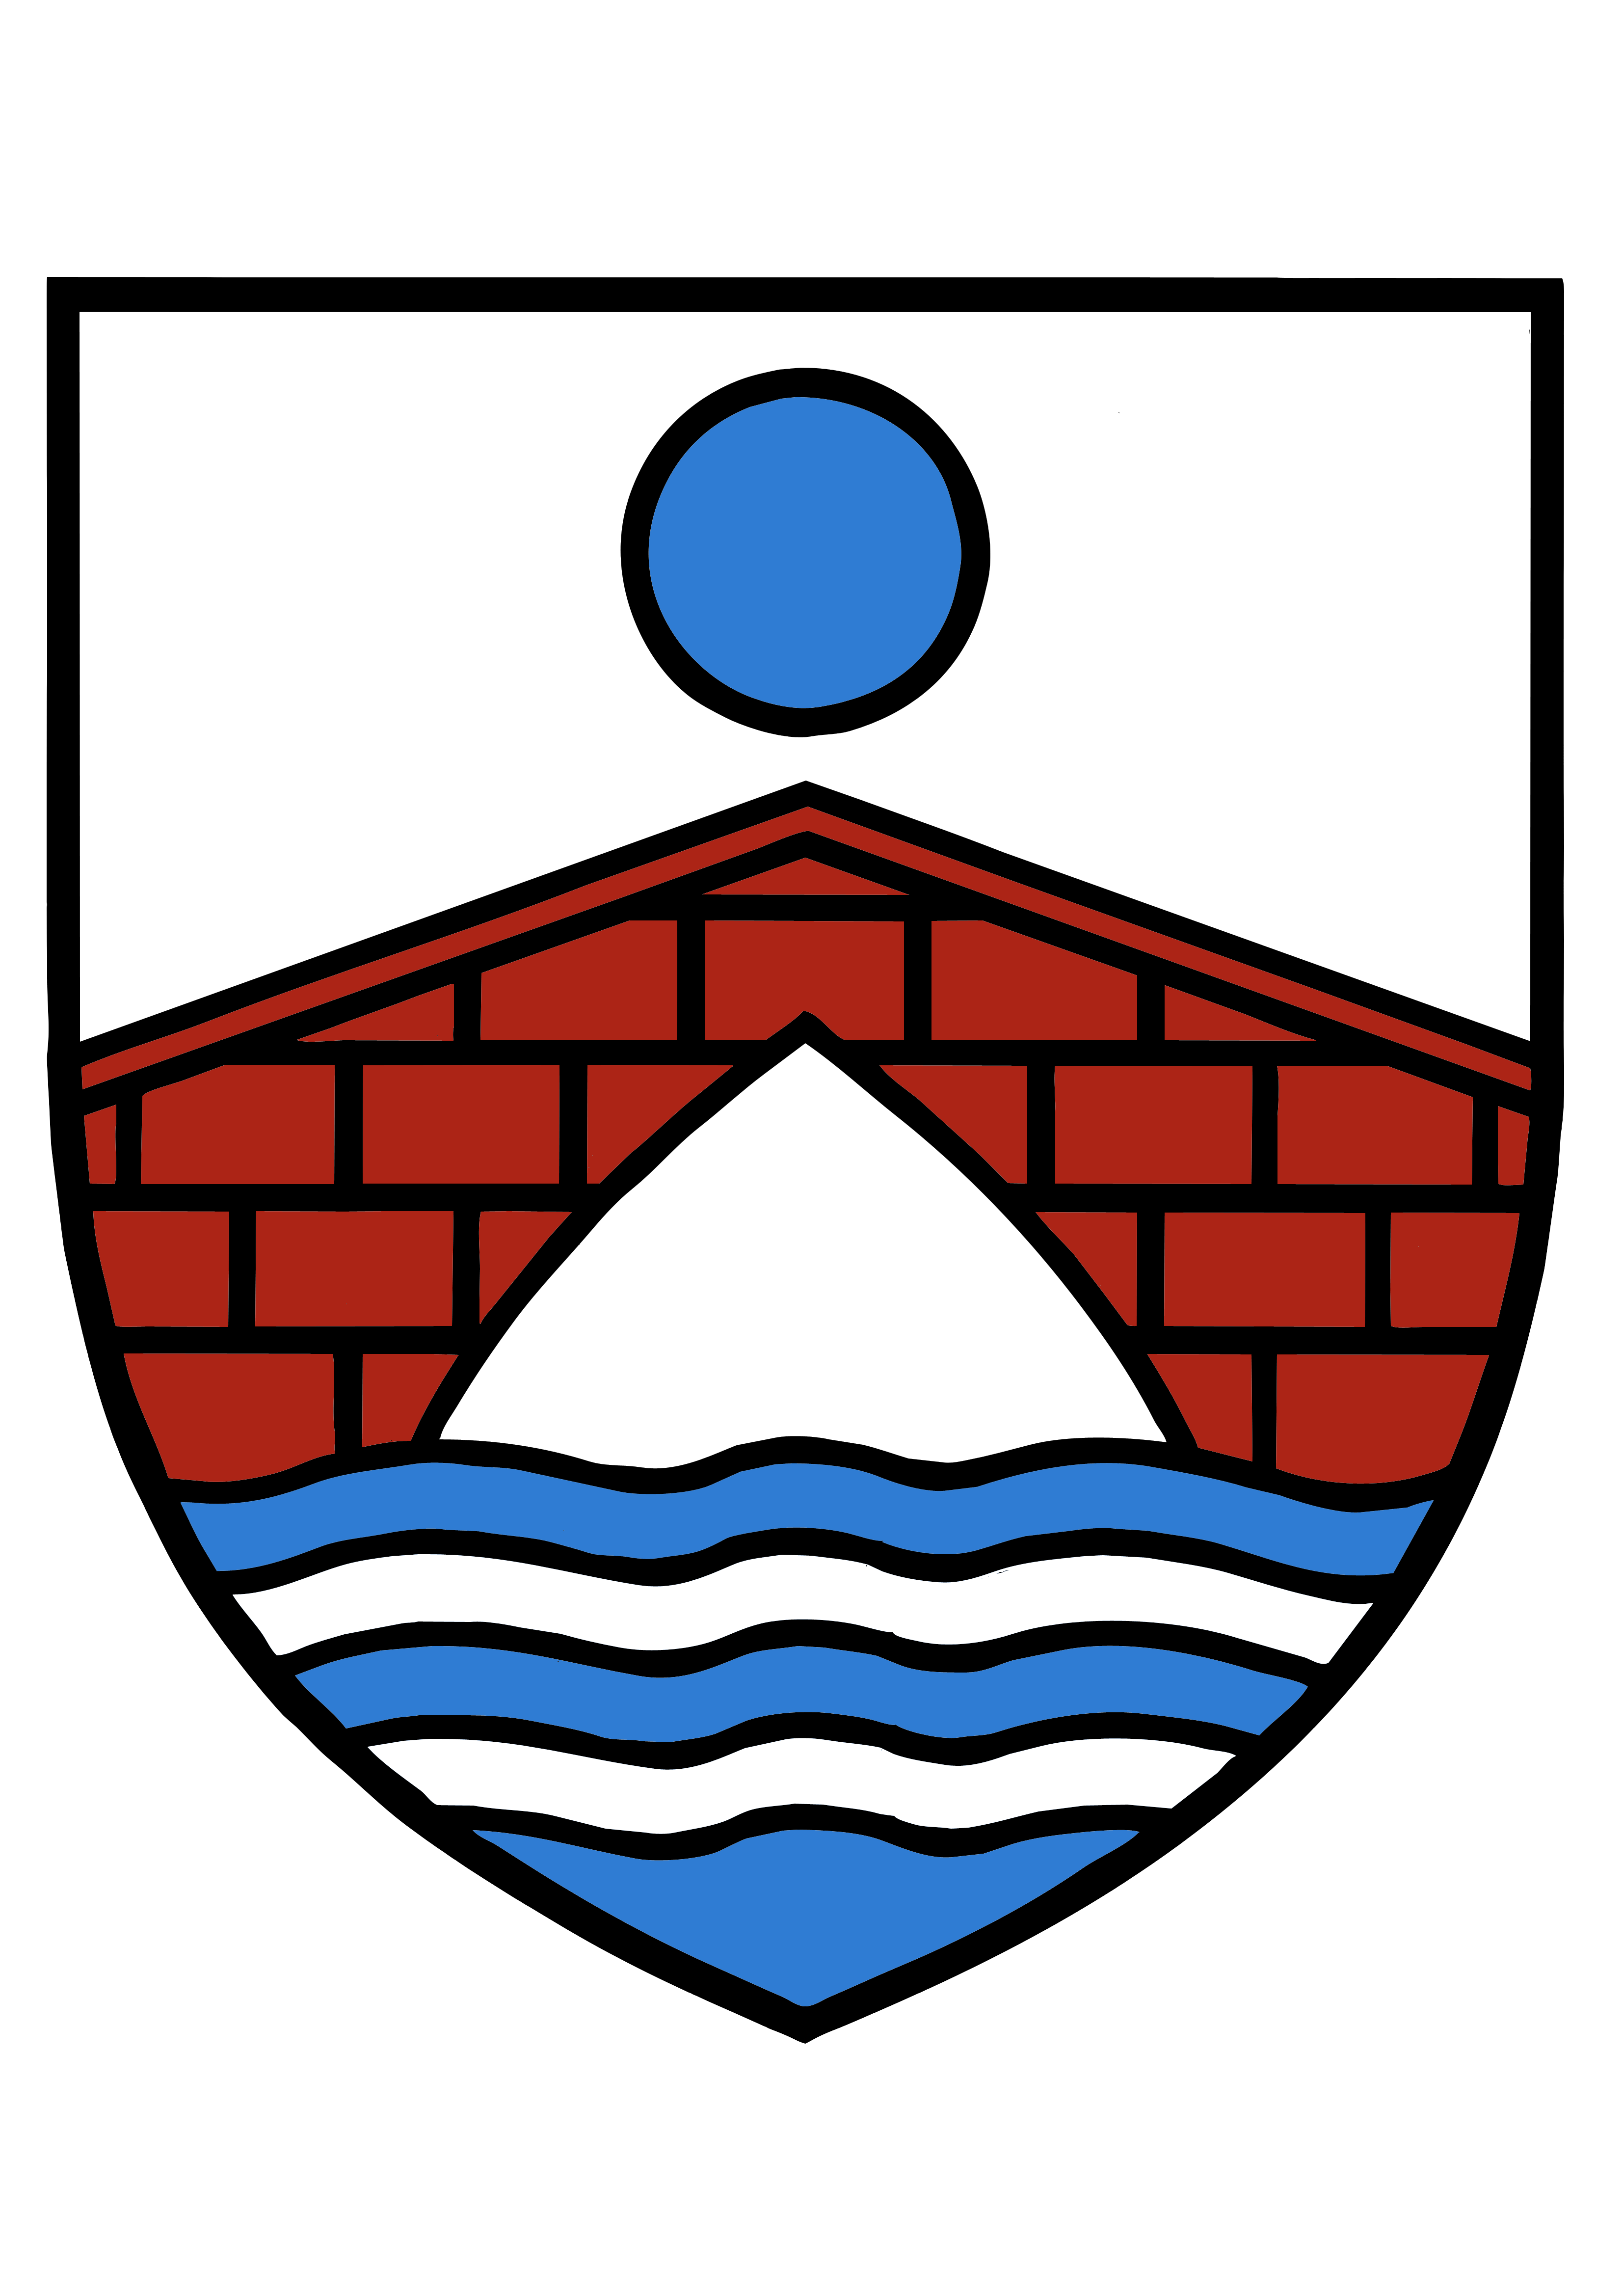 Logo de la Commune de Naveil